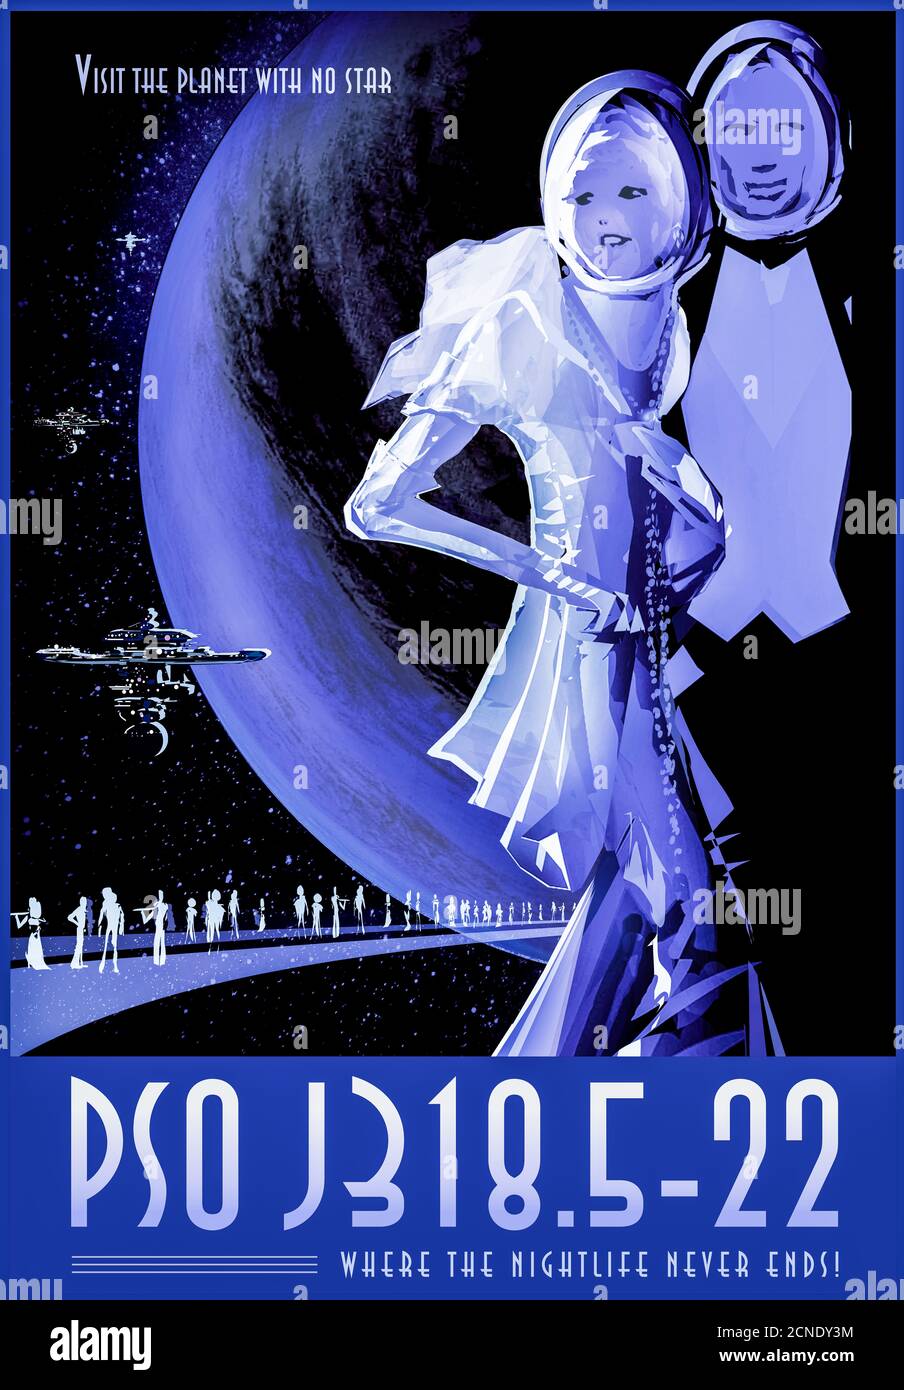 PSO J318.5-22: Visiones de los futuros carteles de viajes espaciales creados por el Laboratorio de Propulsión a Chorro de la NASA. Foto de stock